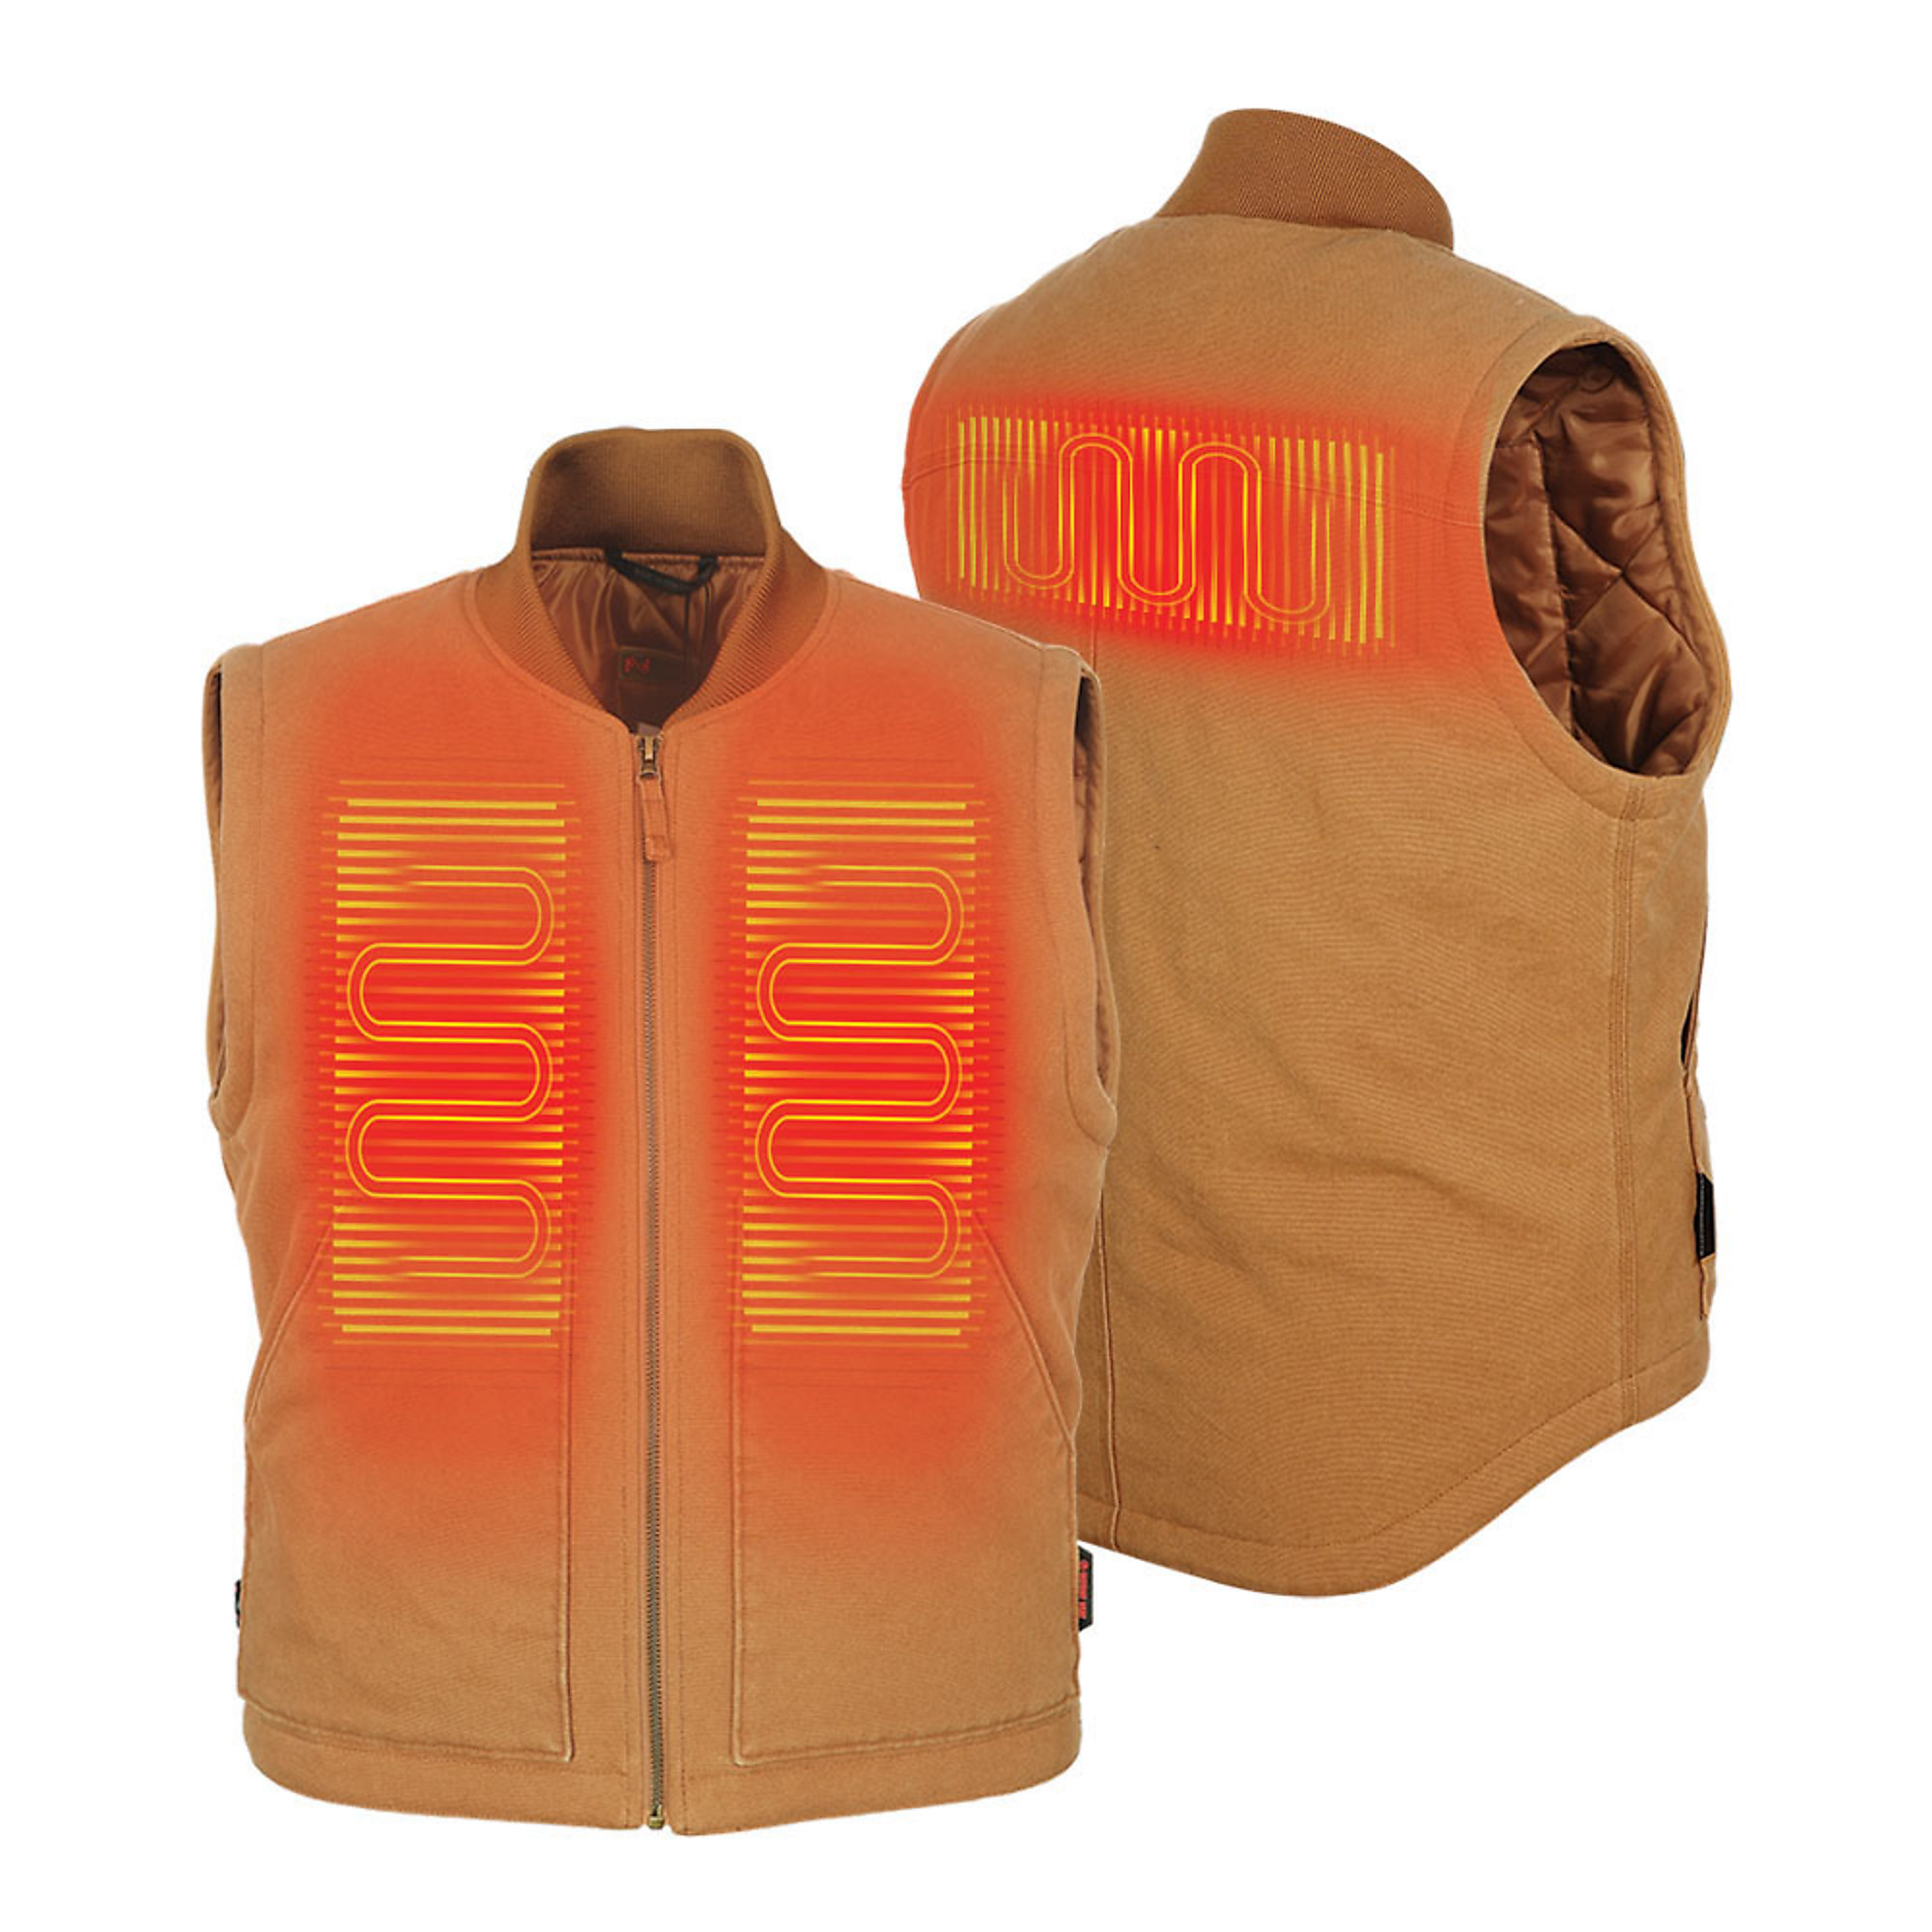 Fieldsheer, Men's Foreman 2.0 Vest with 7.4v Battery, Size M, Color Tan, Model MWMV15130321